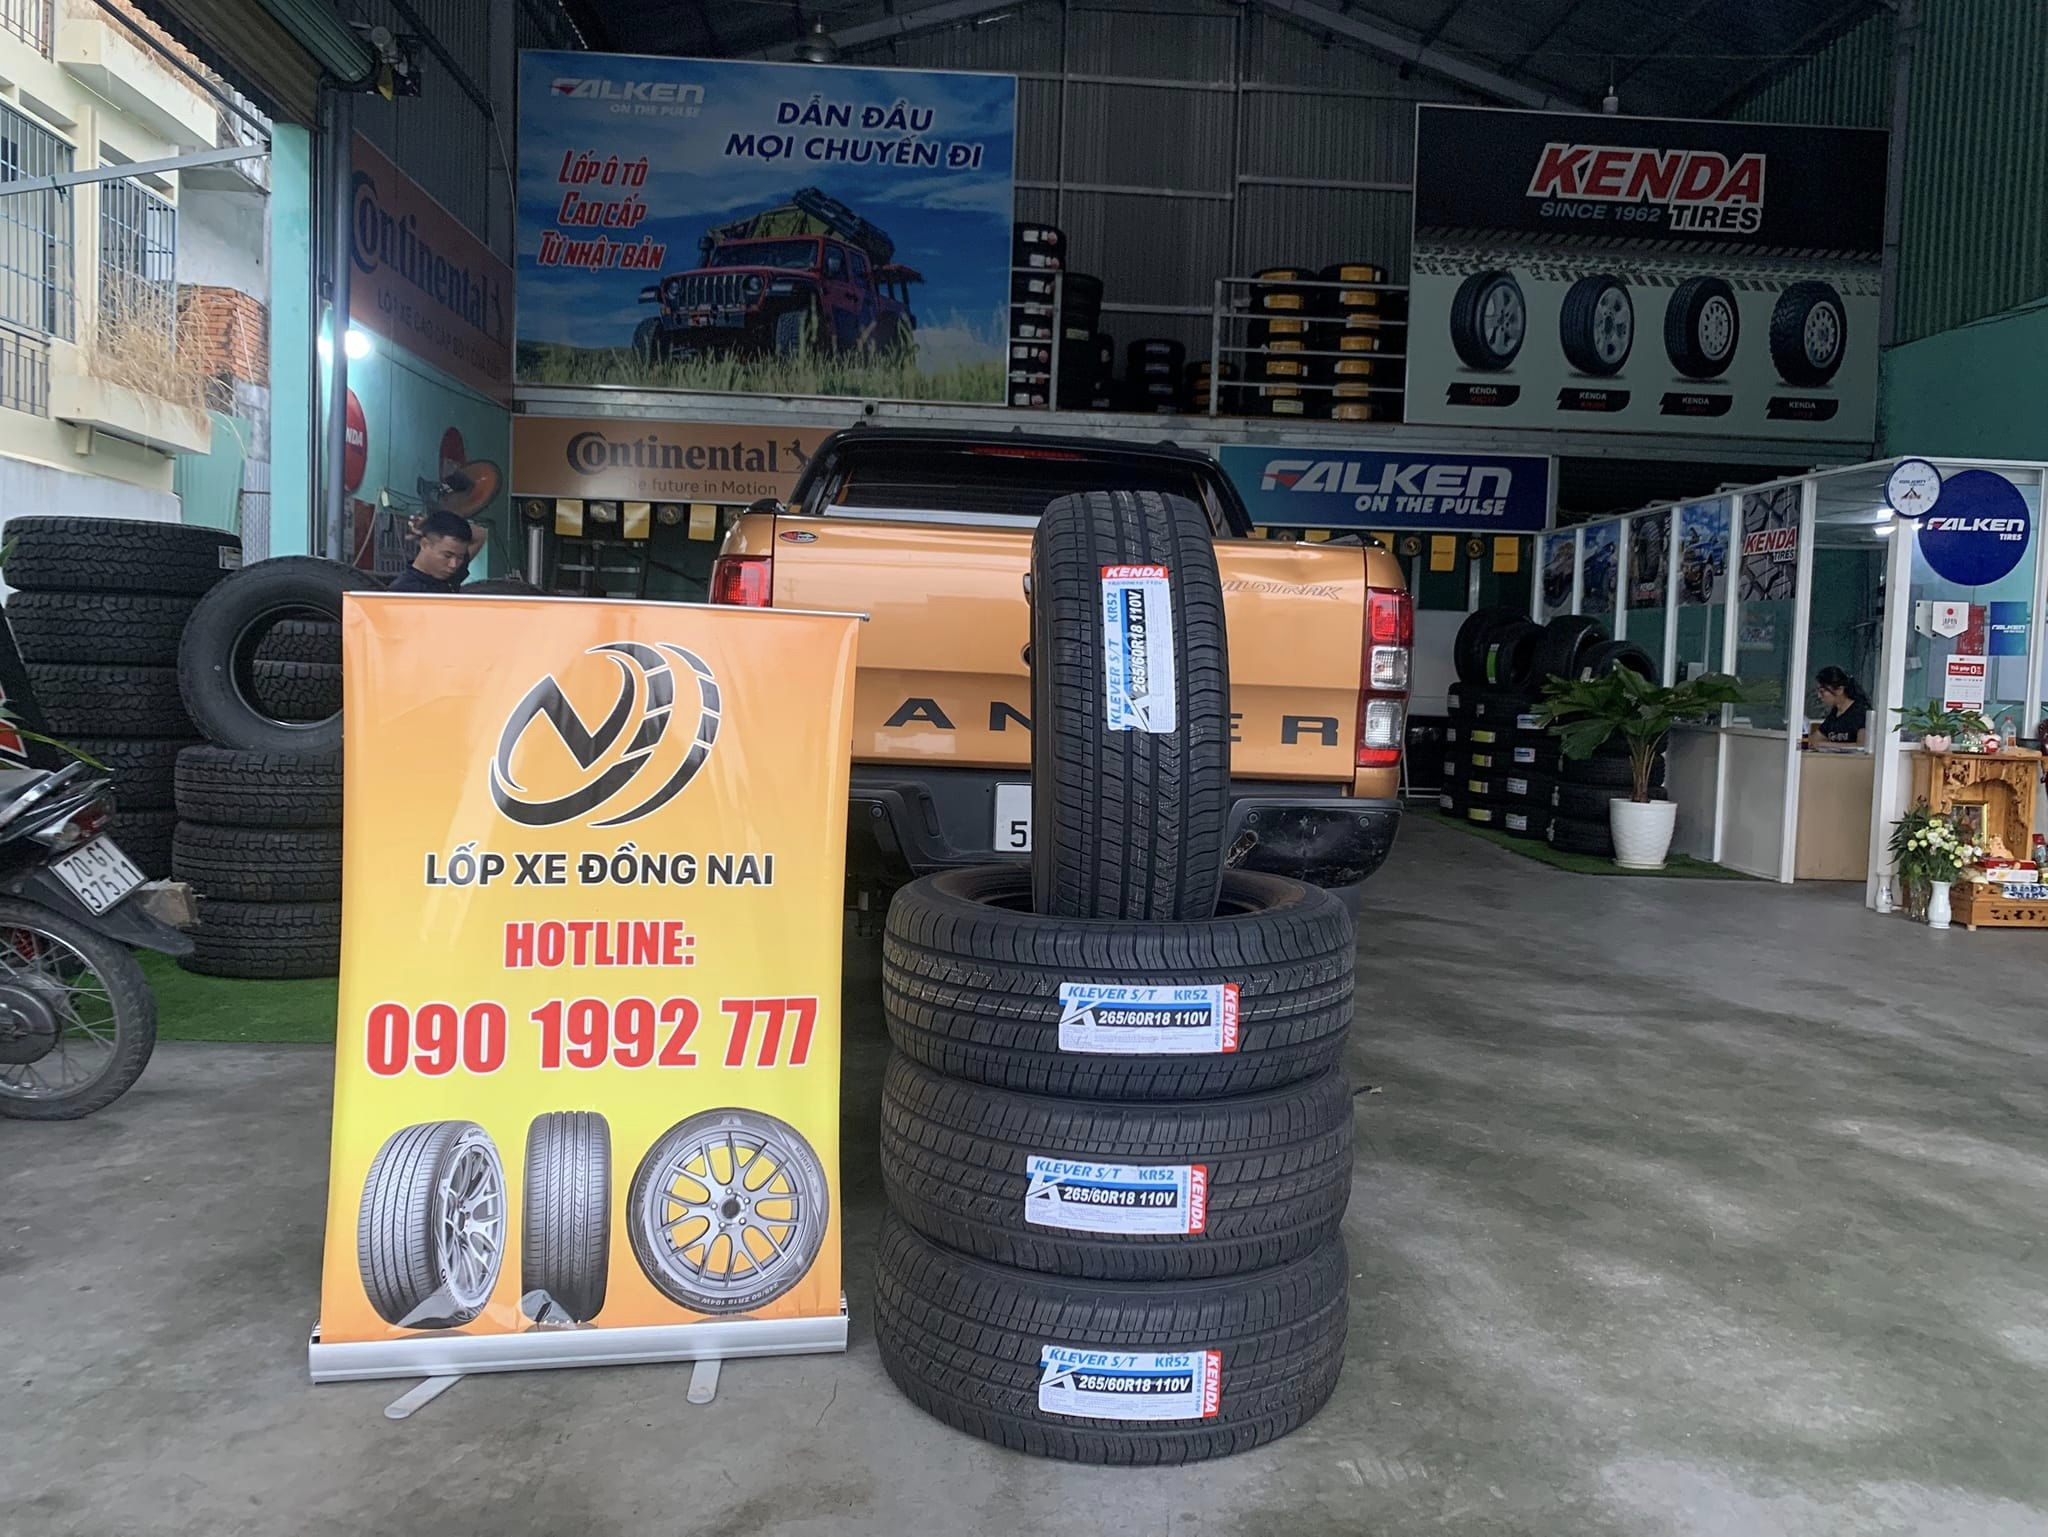 TƯ VẤN : Thay lốp xe Ford Ranger Wildtrack chính hãng ở Biên Hoà, Đồng Nai.